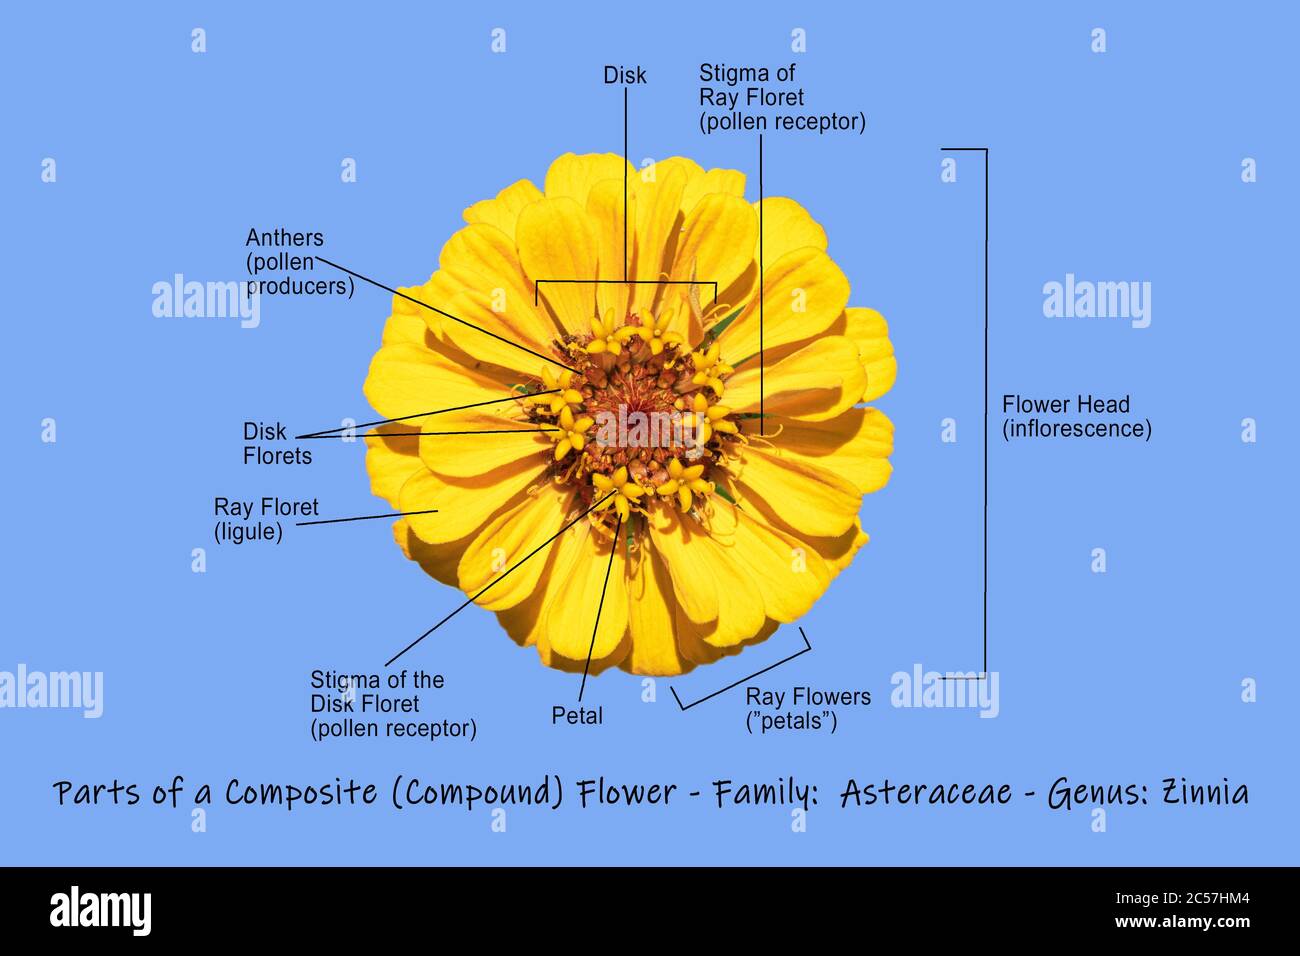 Diagrama de flores compuesto fotografías e imágenes de alta resolución -  Alamy